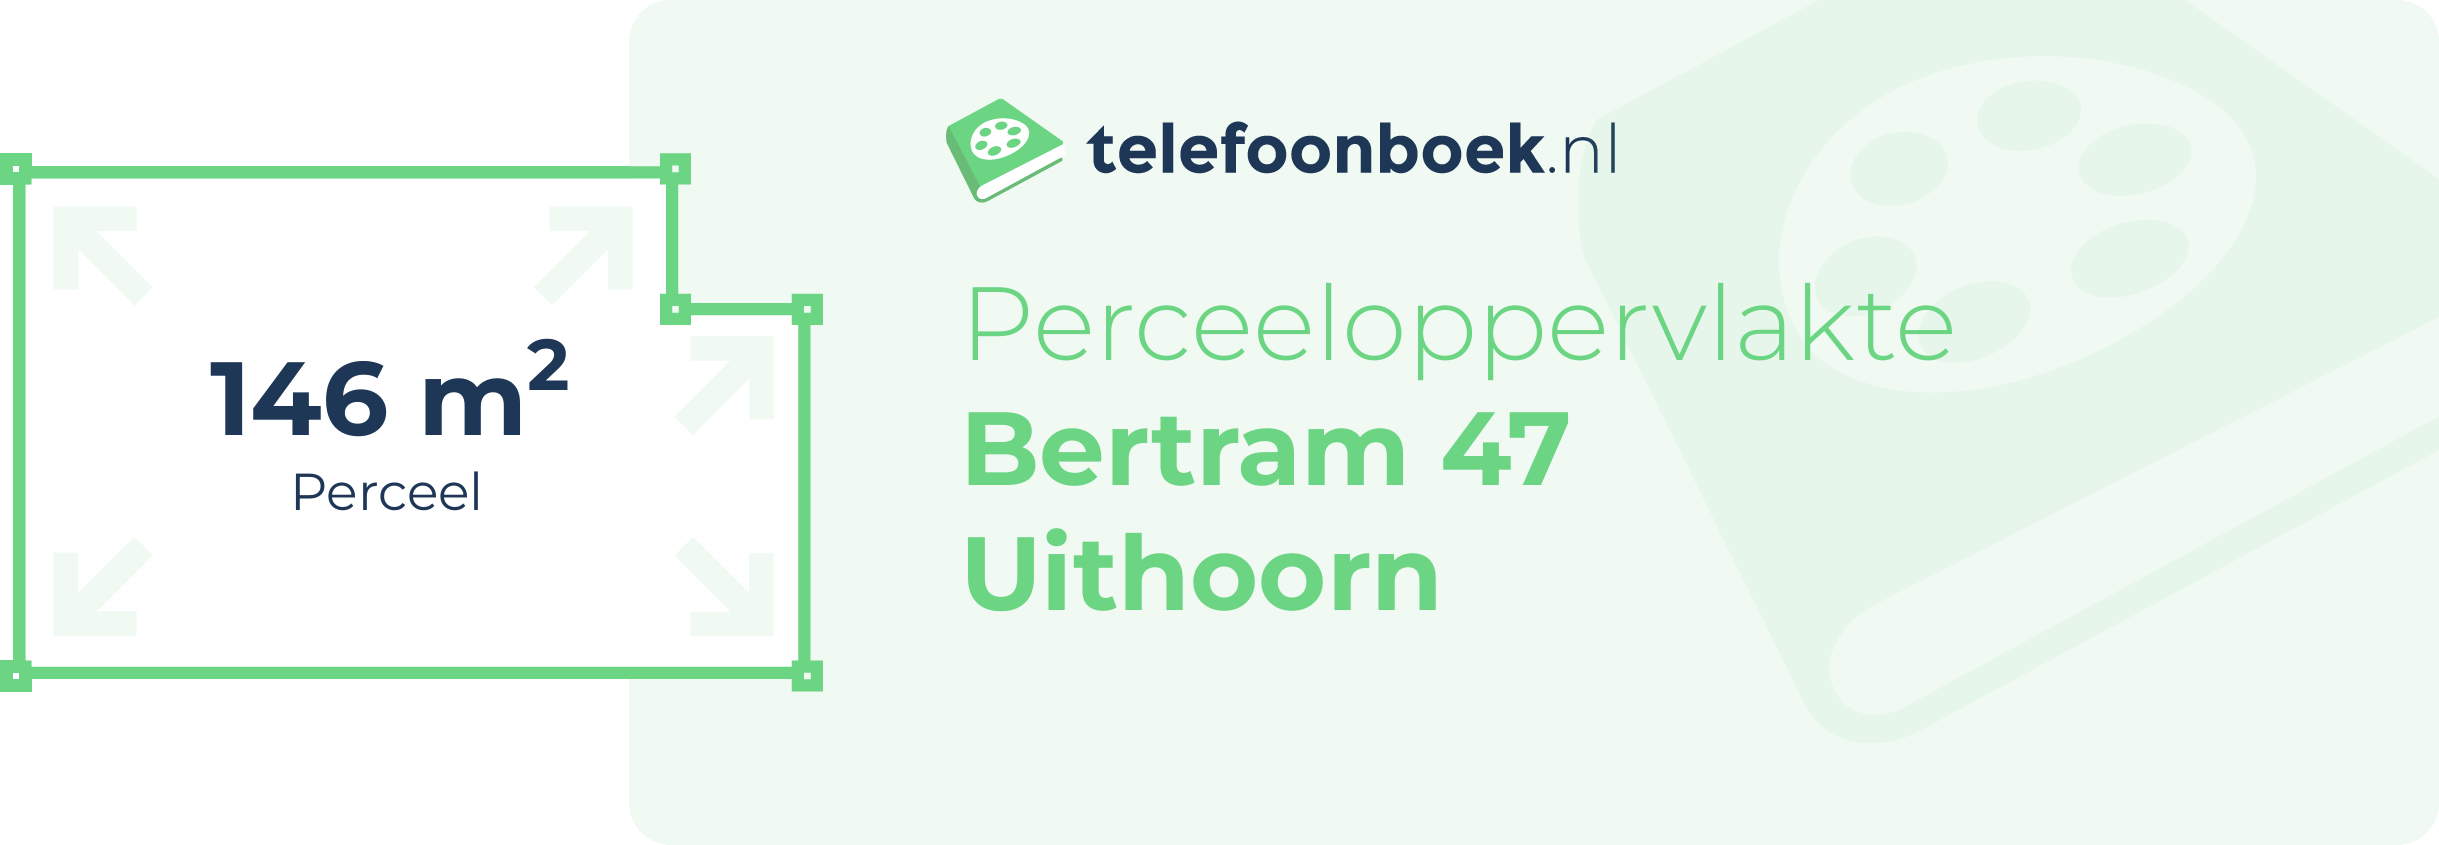 Perceeloppervlakte Bertram 47 Uithoorn